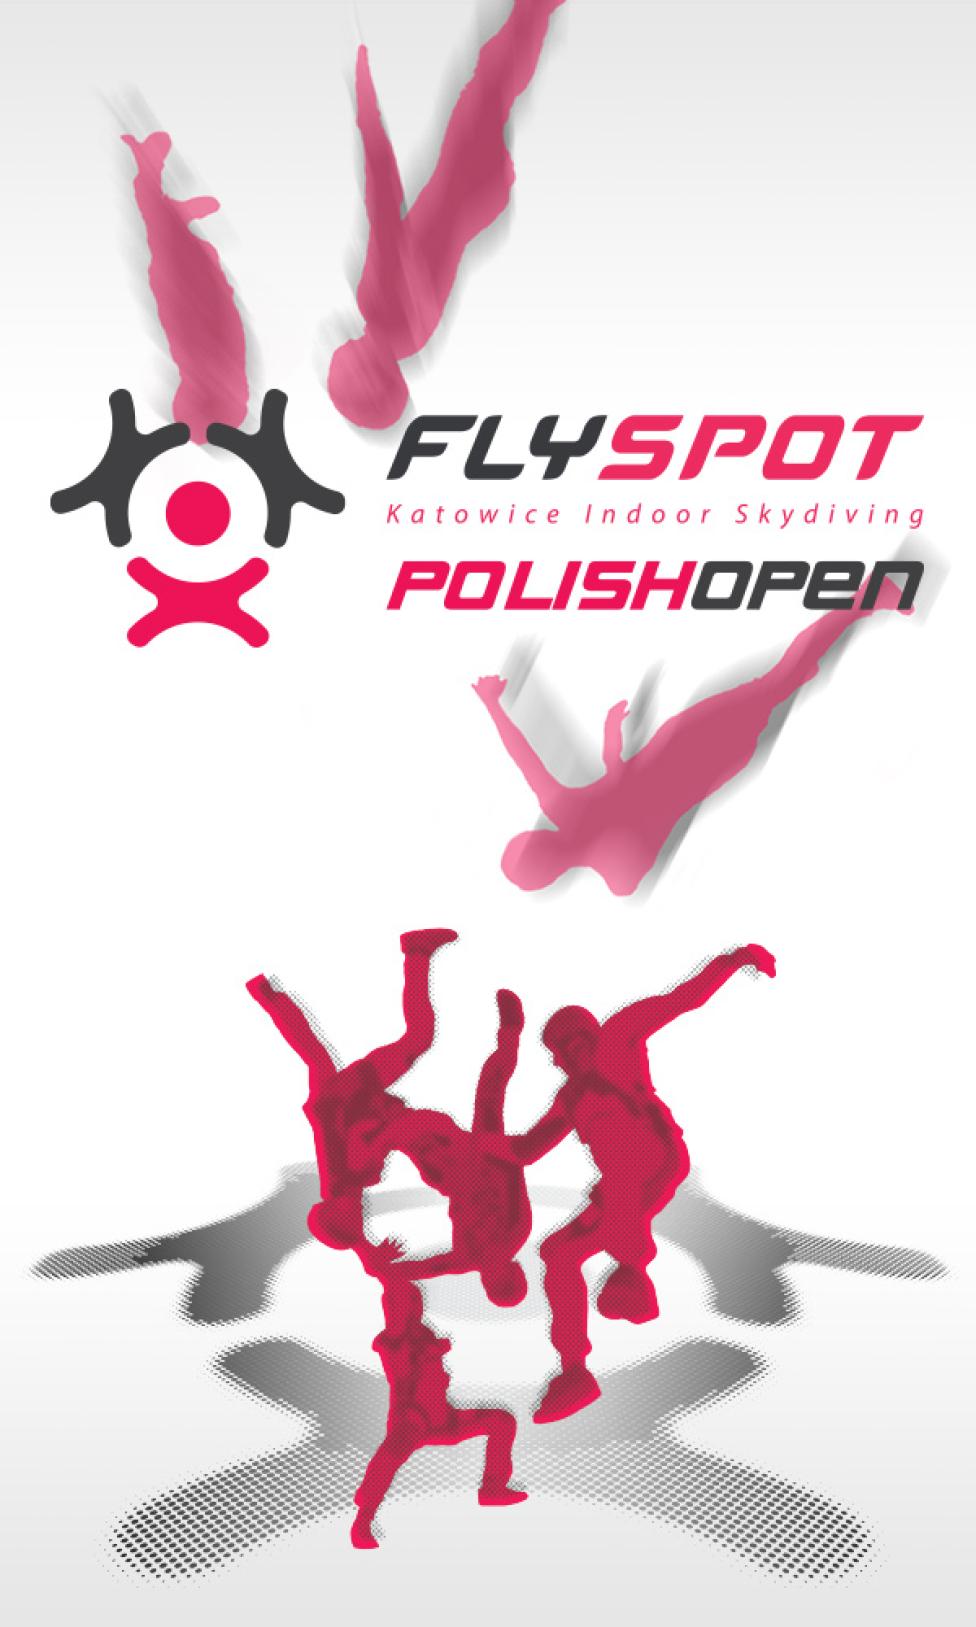 Flyspot Polish Open 2017 w Katowicach (fot. Flyspot)